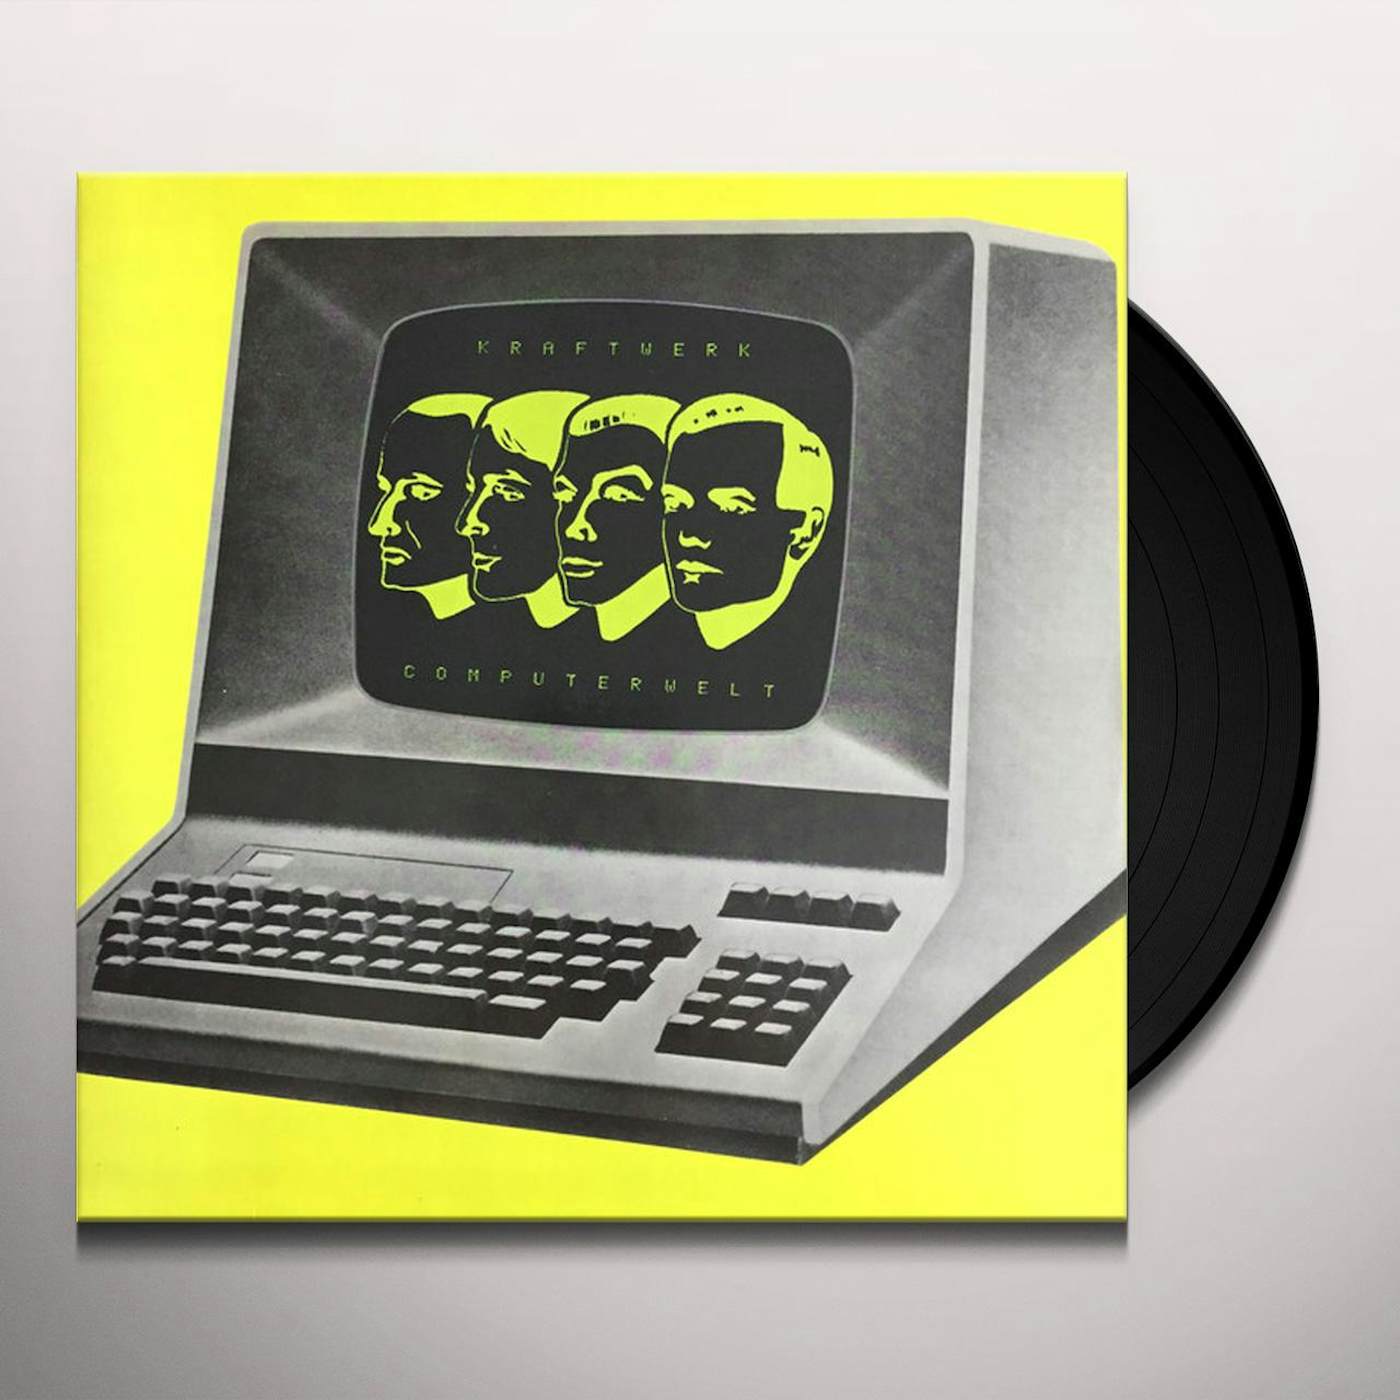 Kraftwerk Computerwelt Vinyl Record